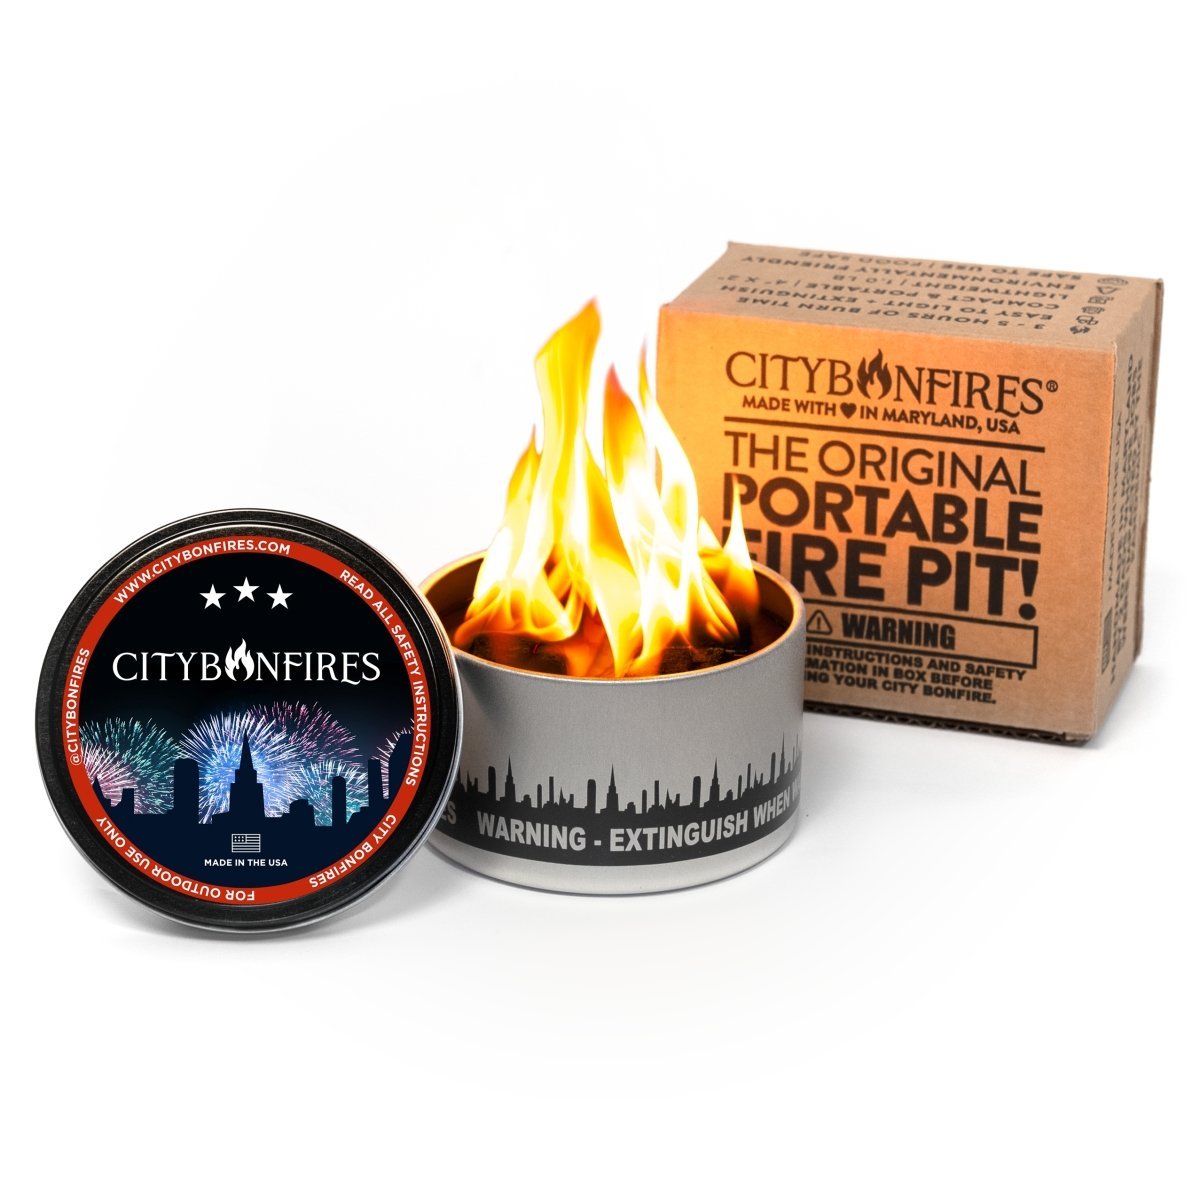 City Bonfire (Portable Fire Pit)